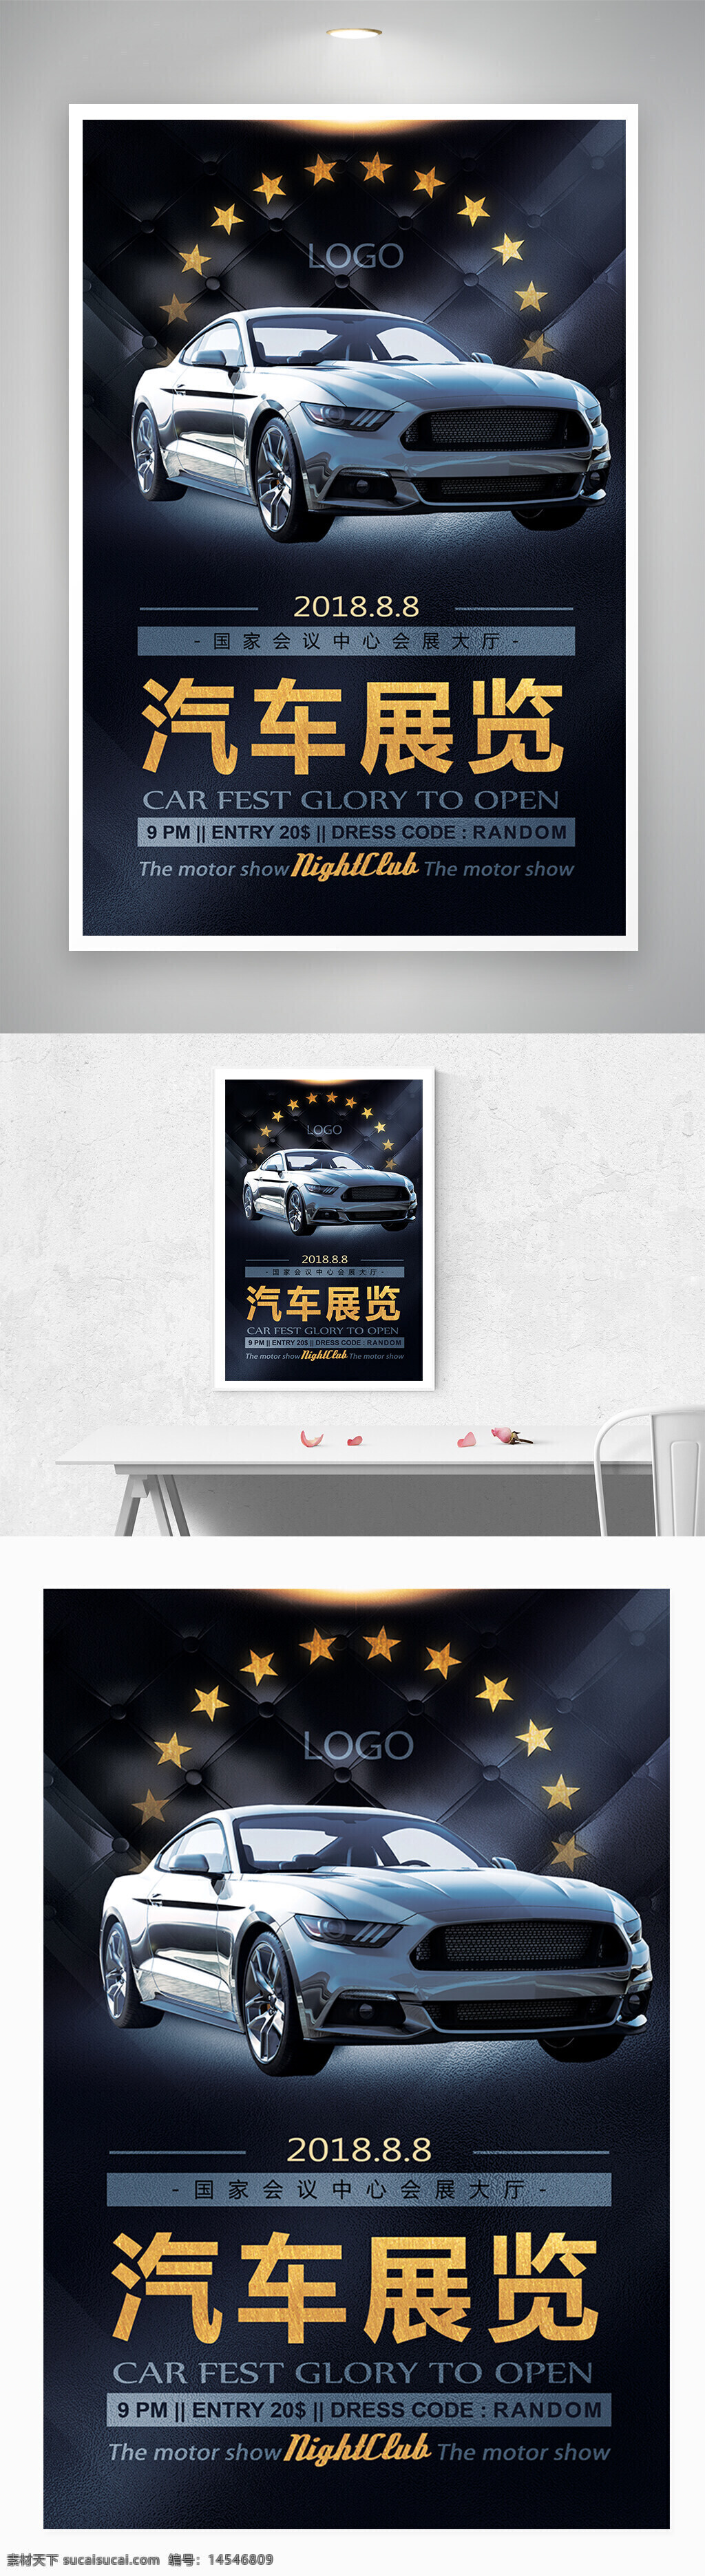 汽车 车展 卖车 展览 海报